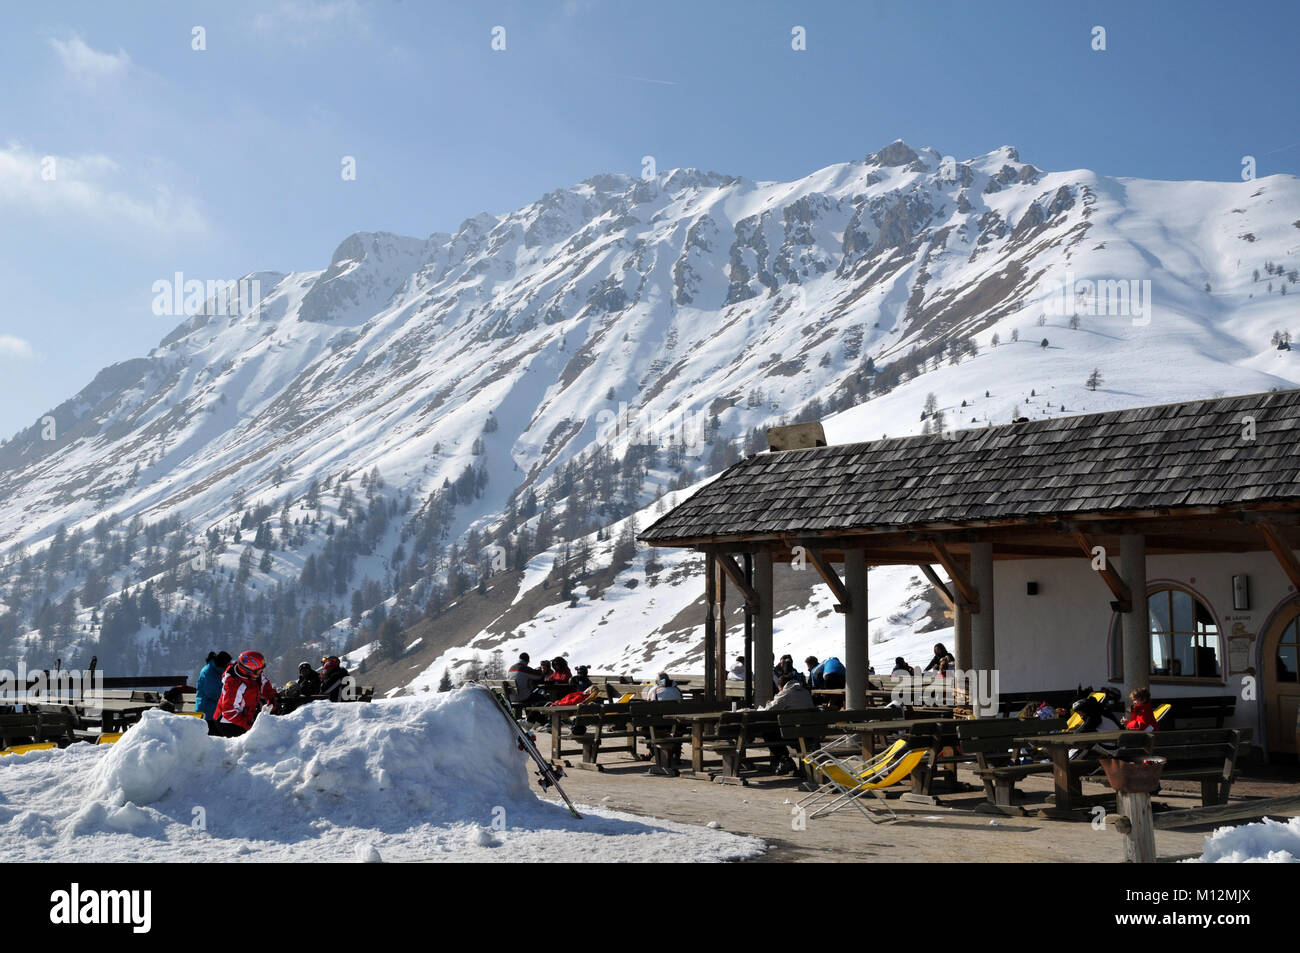 Ski slope of Arabba, ski resort of italian Dolomites Stock Photo Alamy